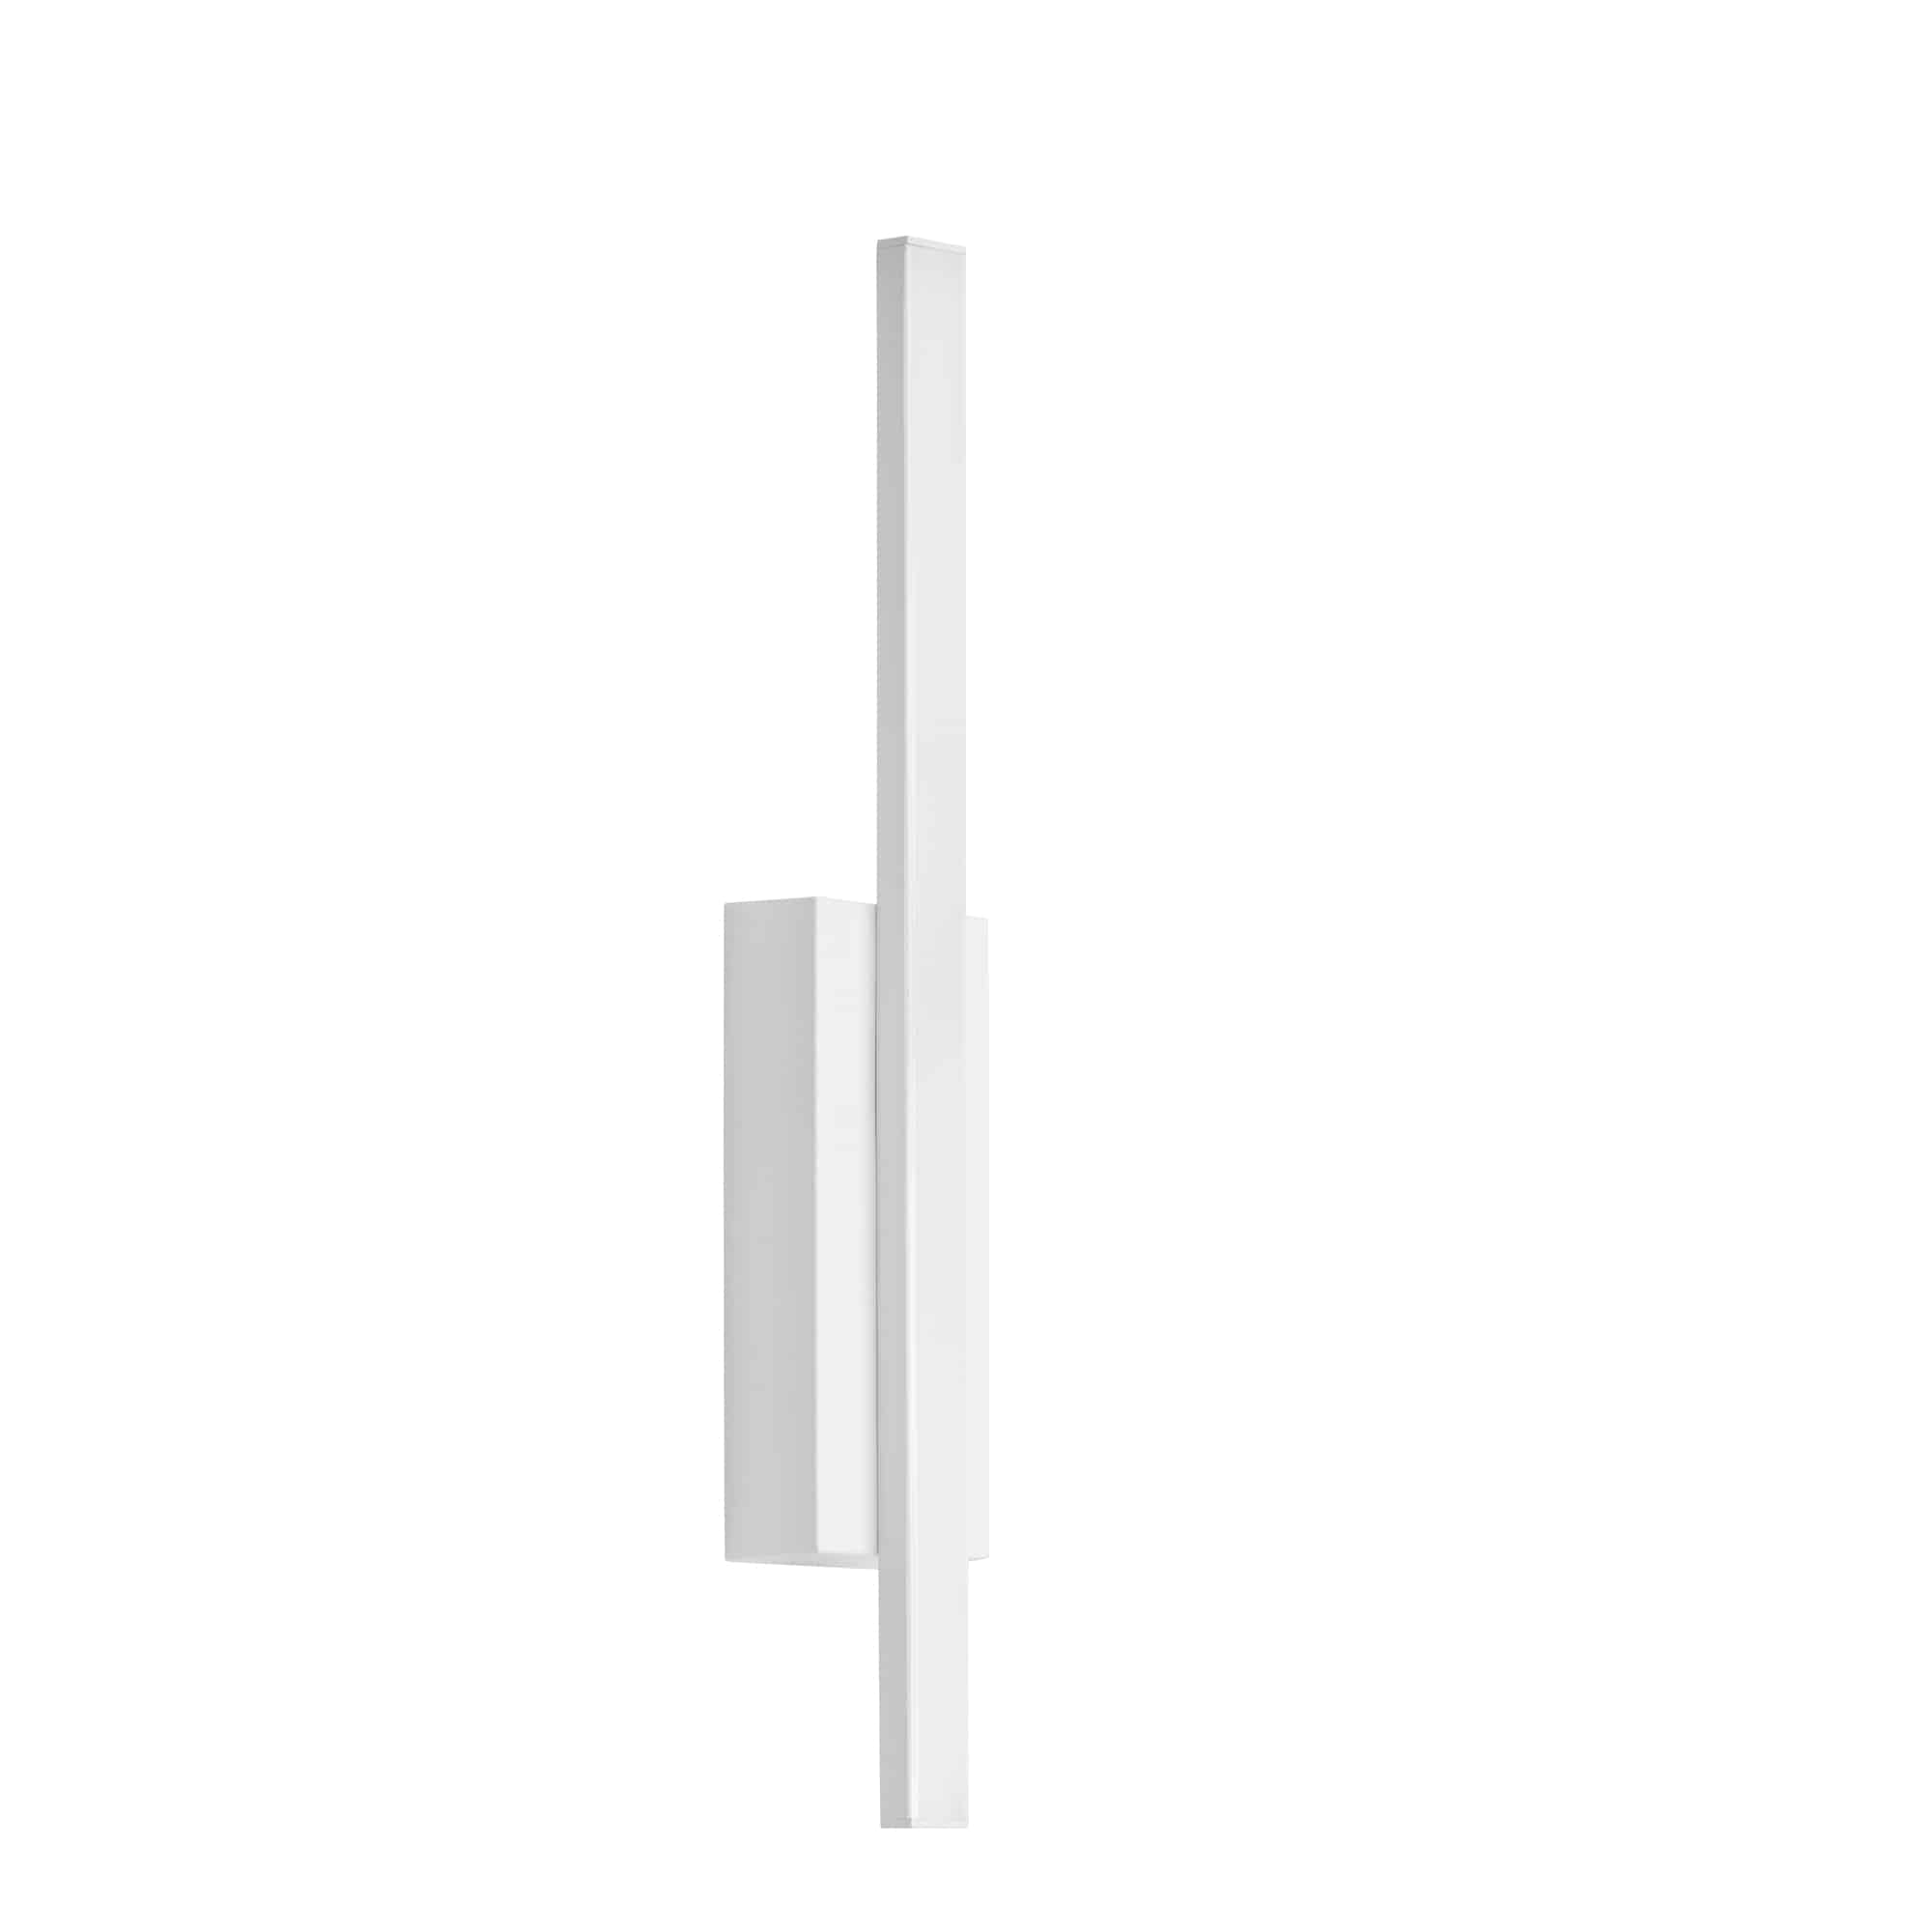 TELEFUNKEN LED Außenwandleuchte, 37 cm, 4 W, Weiß